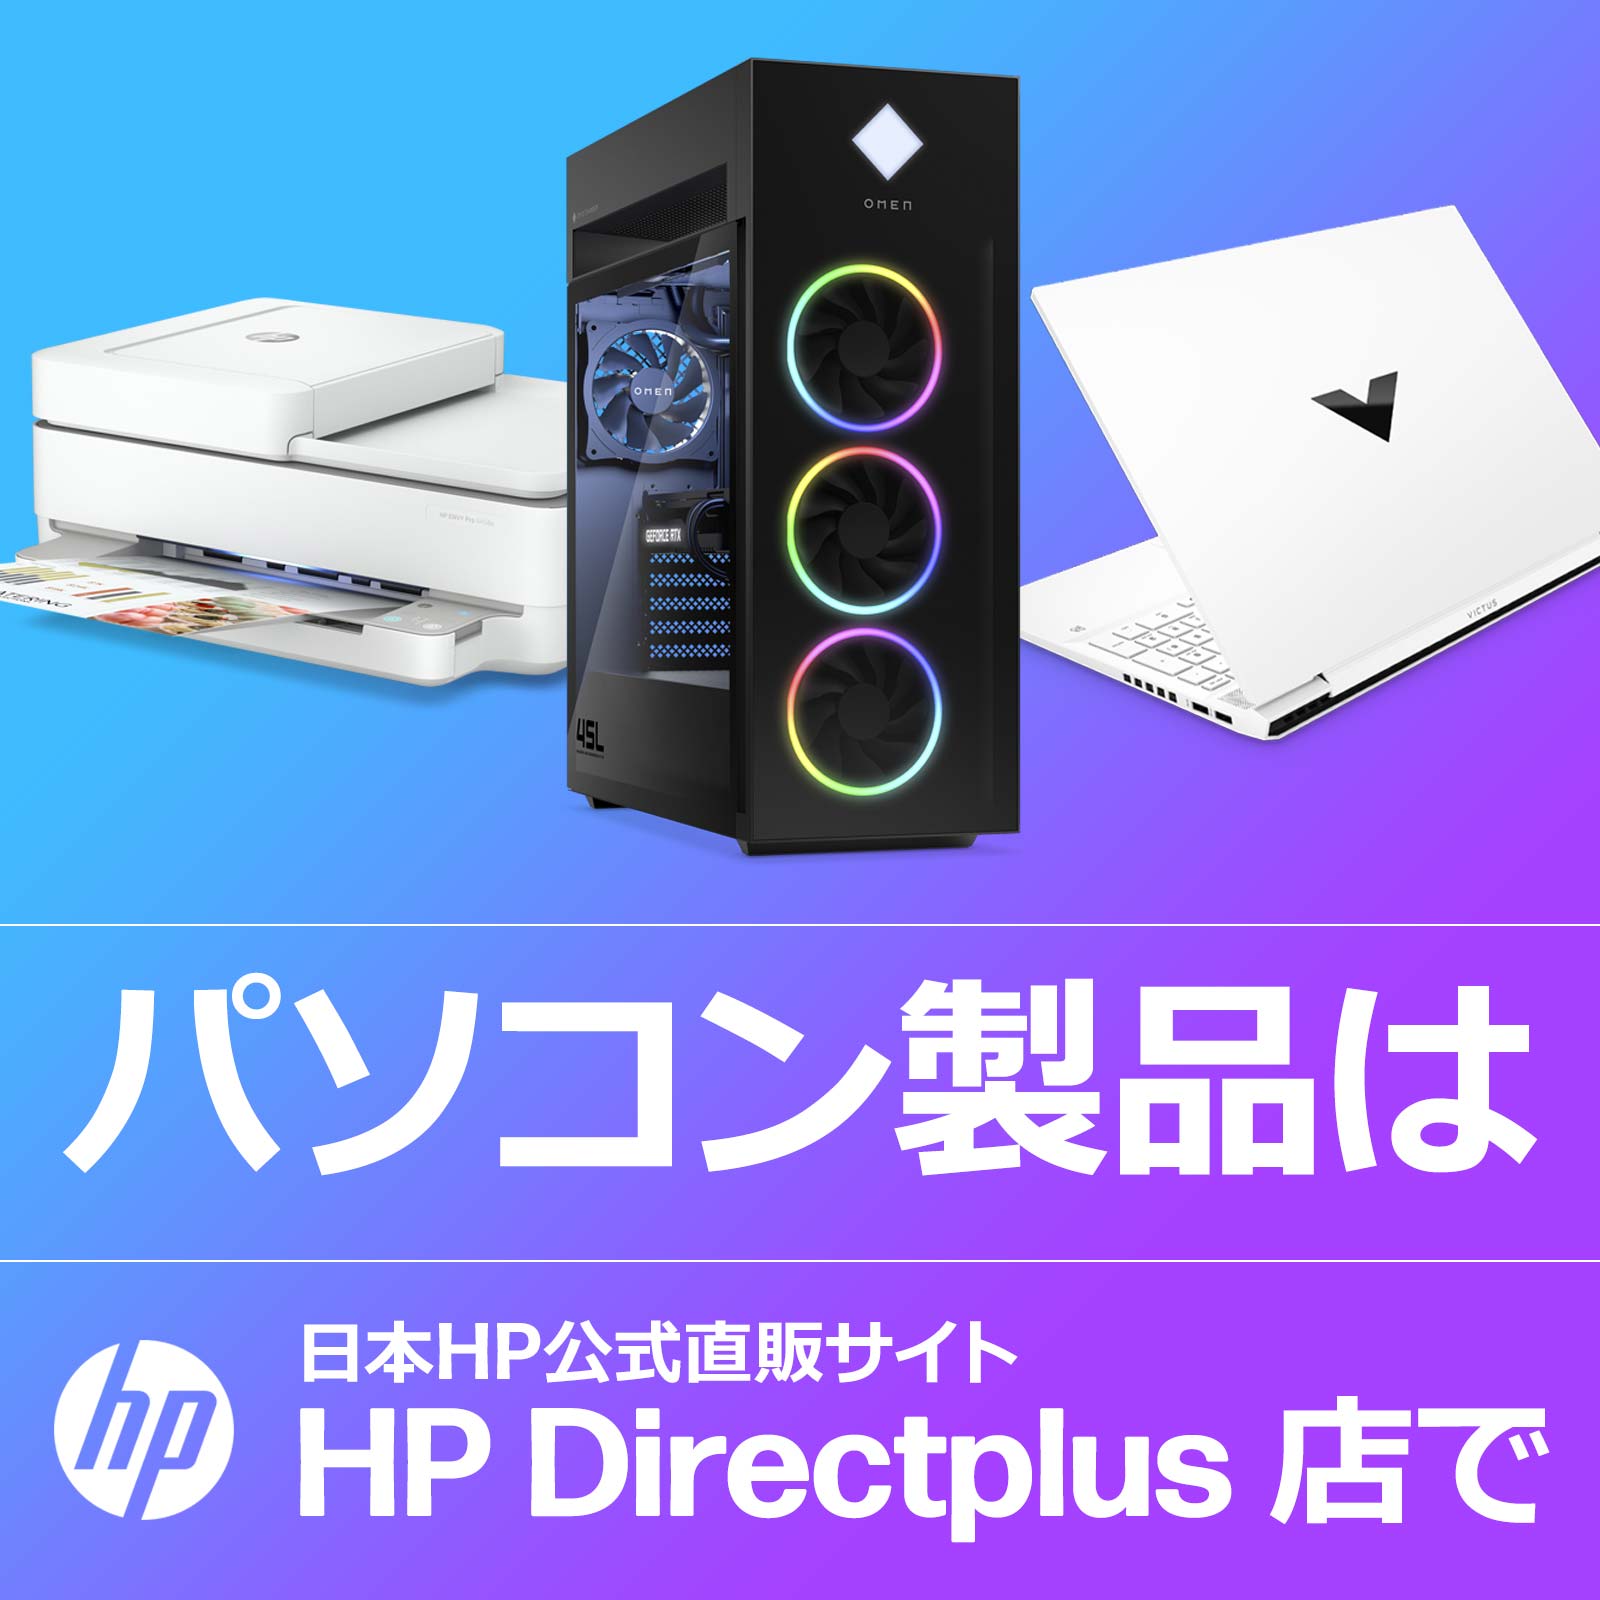 ゲーミングパソコン、プリンターは日本HP公式直販サイトHP Directplus 店で